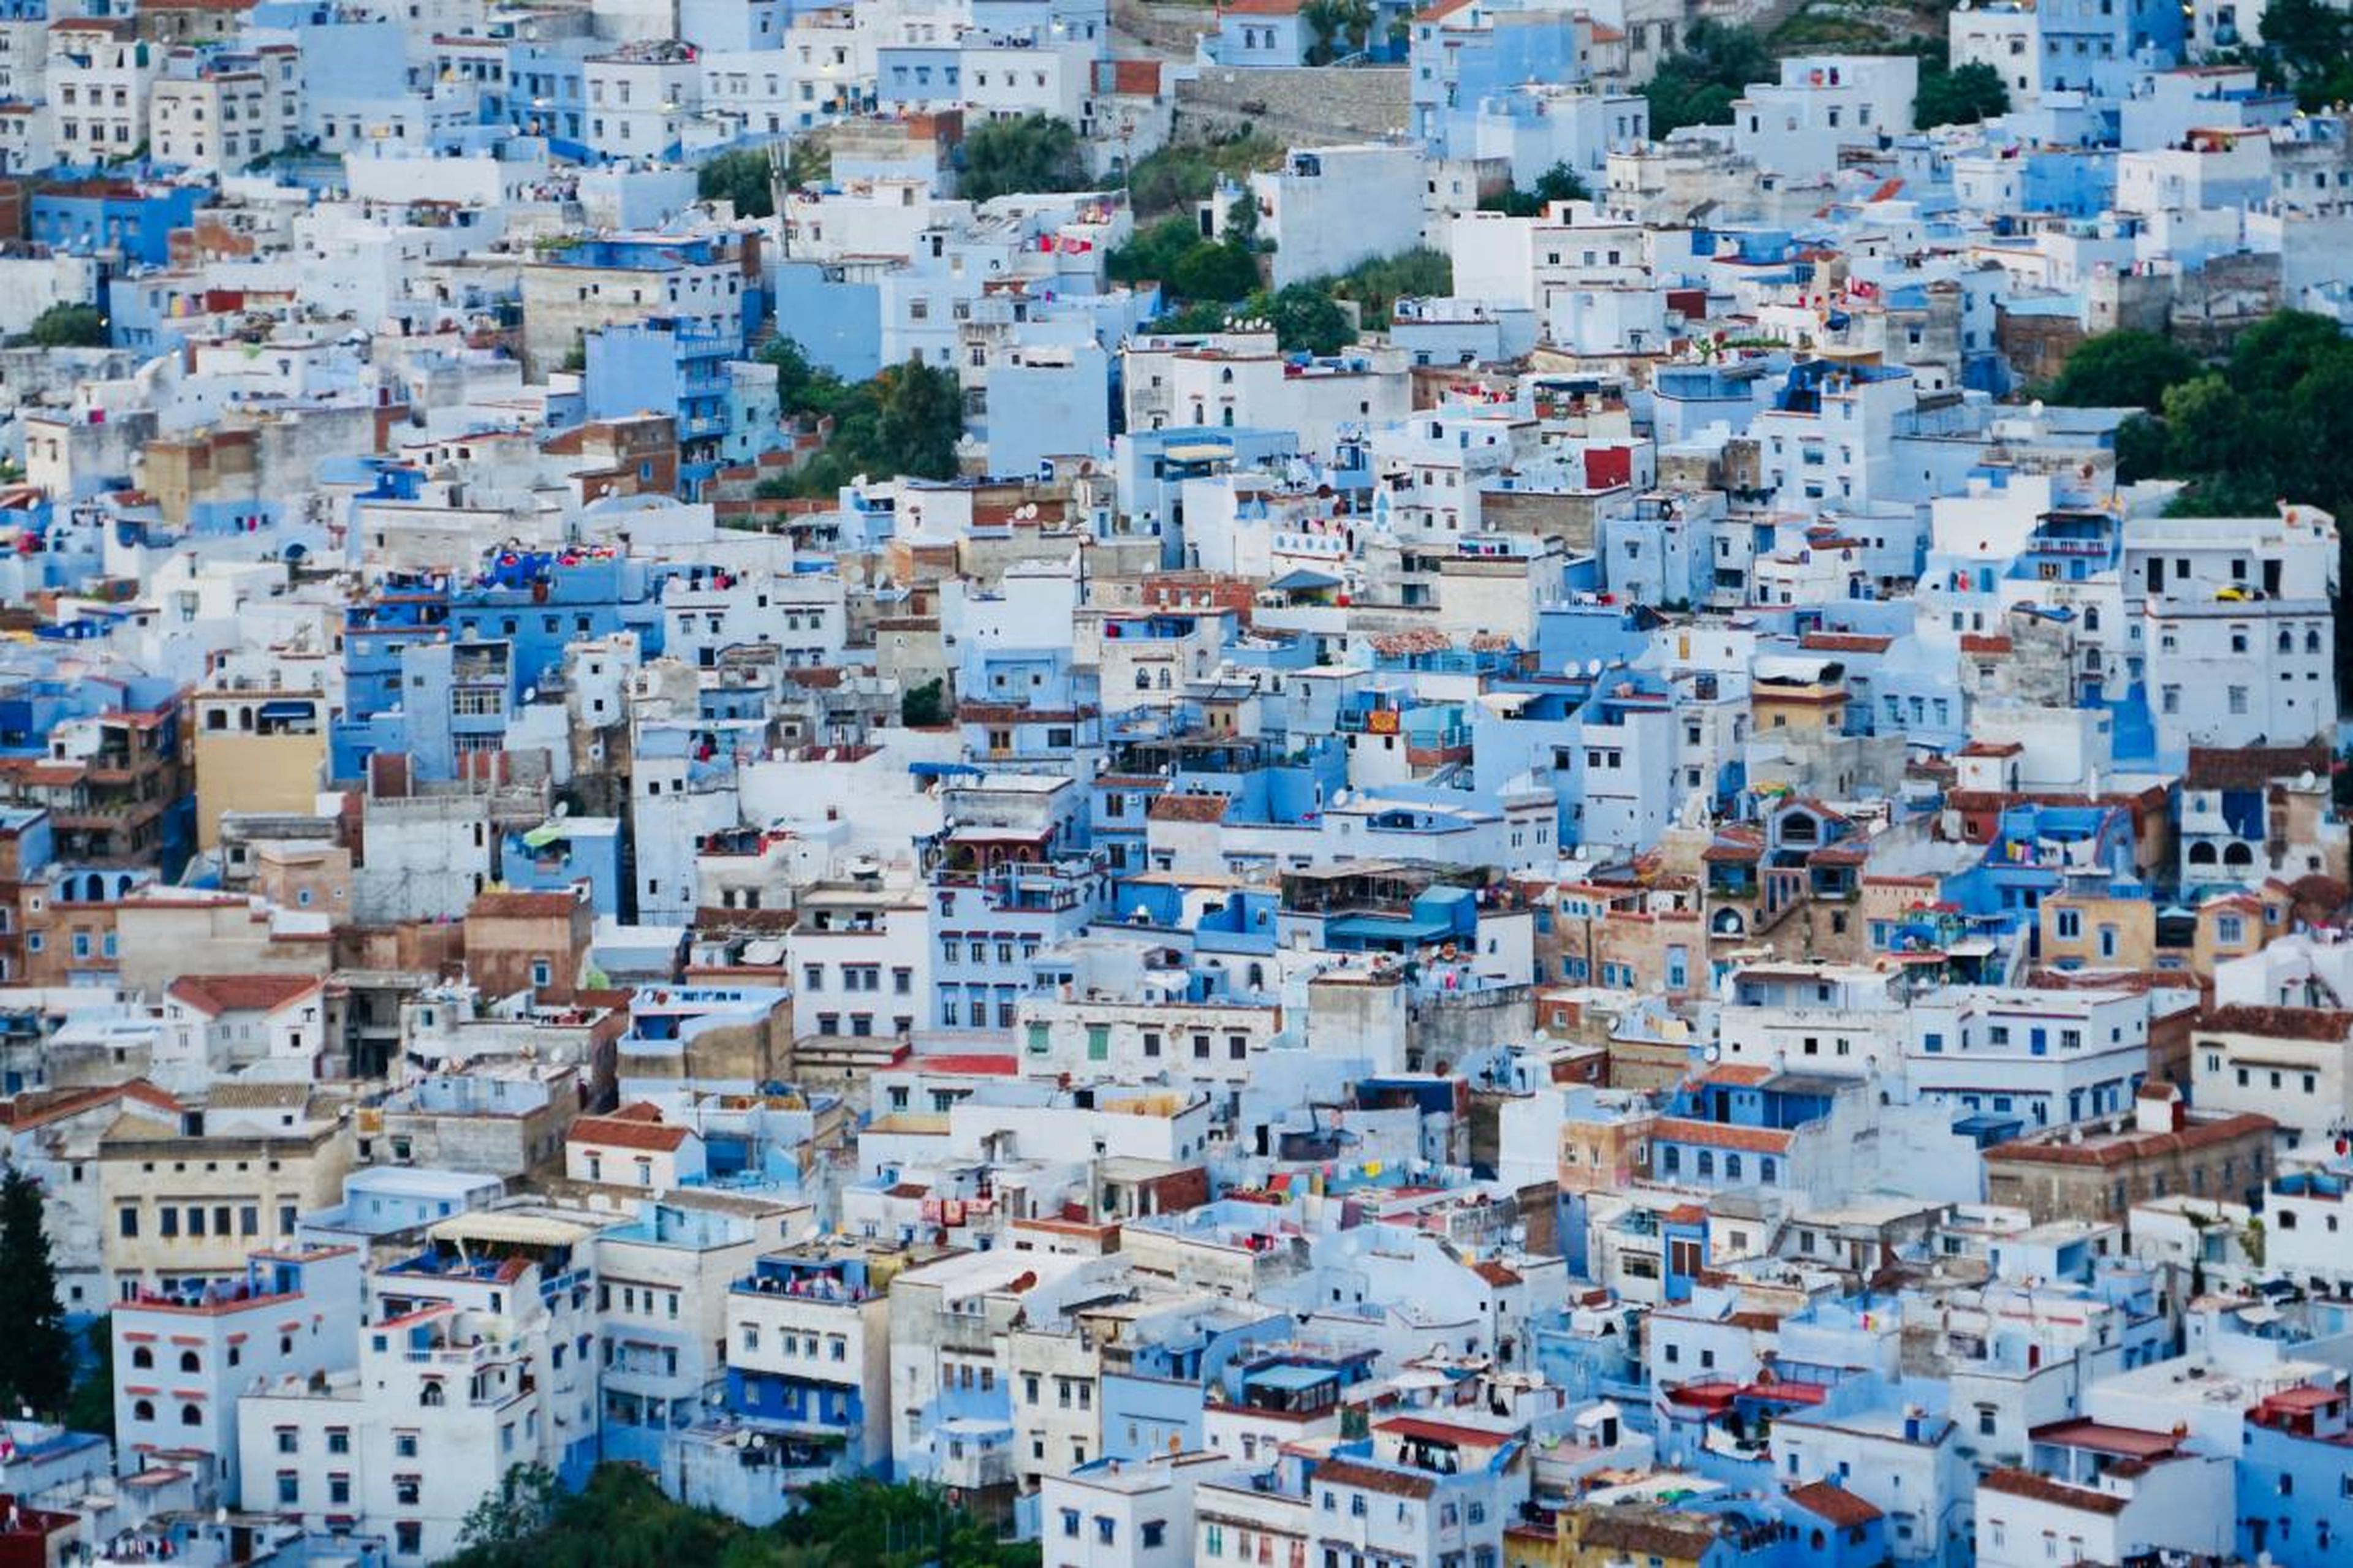 La mayor parte de la ciudad está pintada en diferentes tonos de azul.